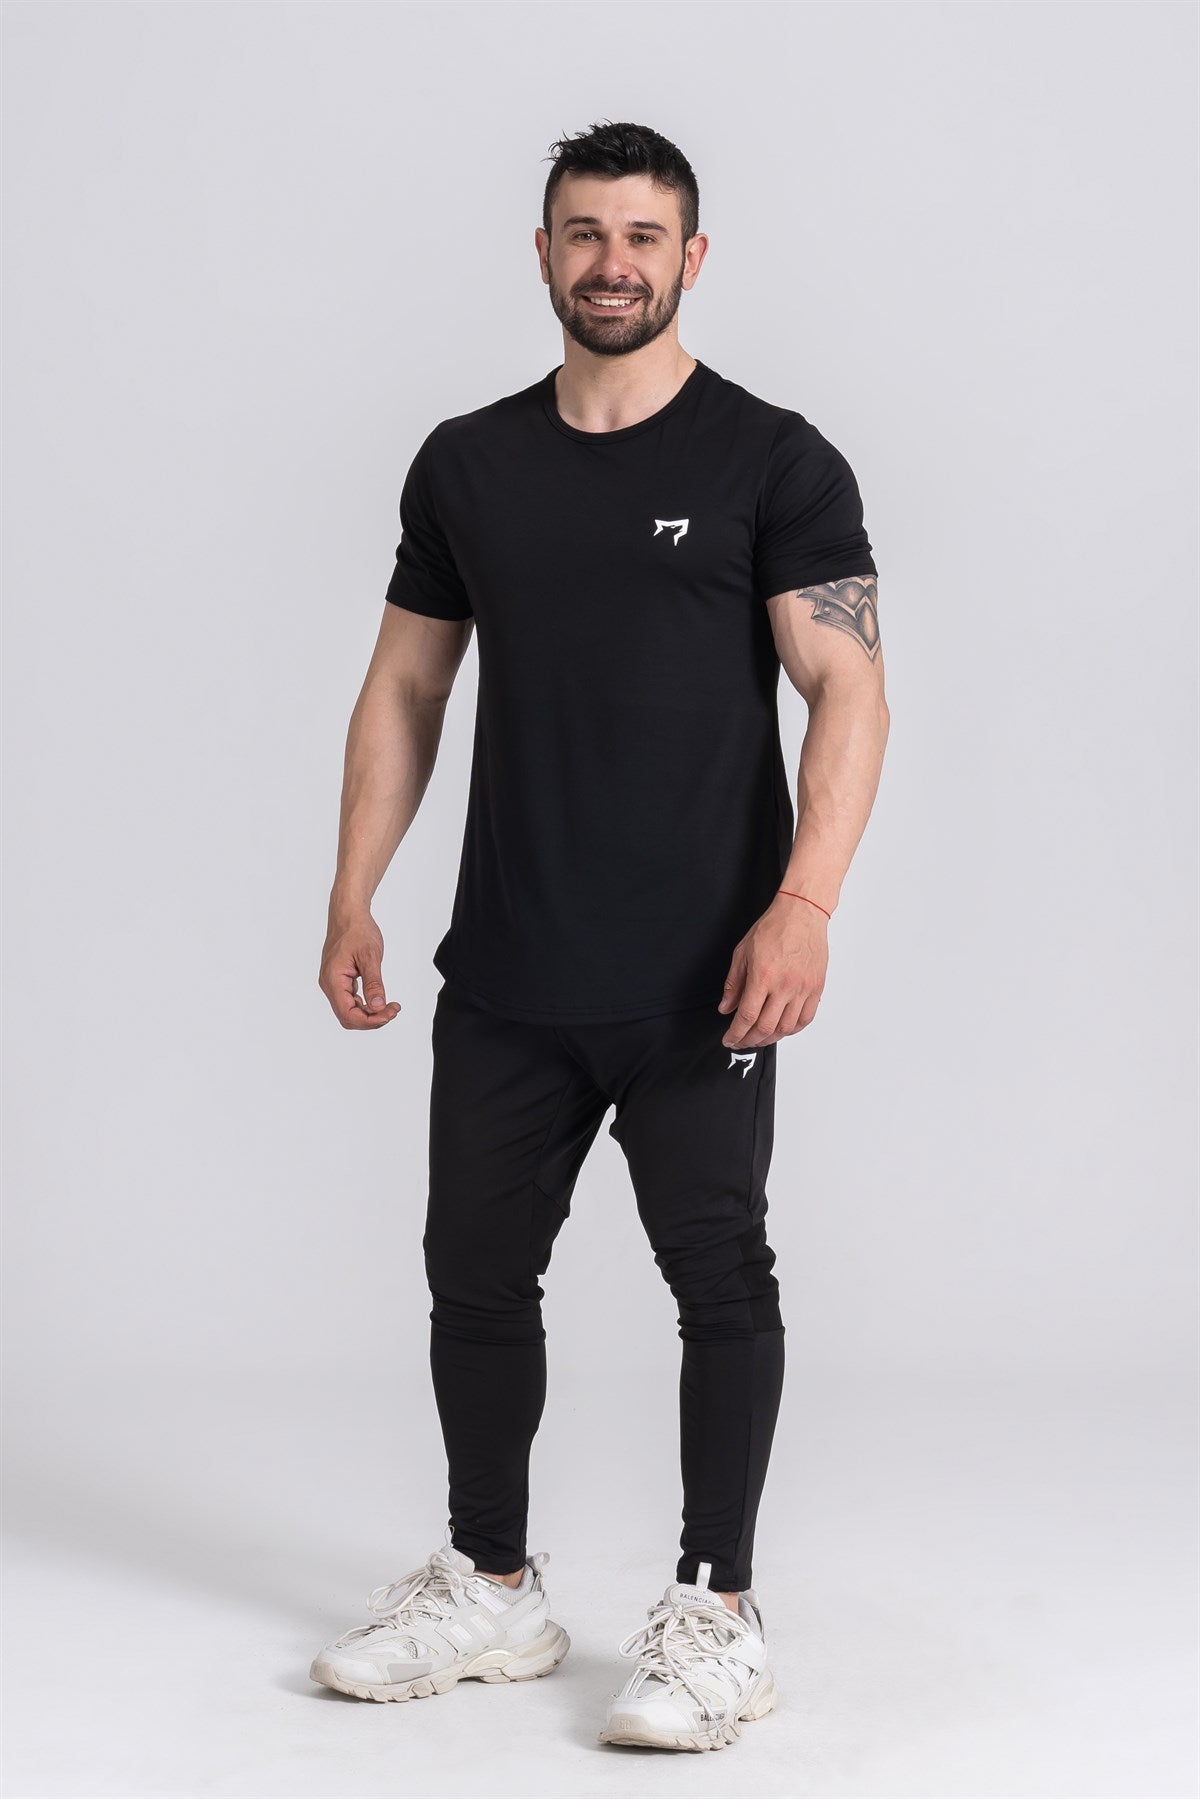 Gymwolves Man Sport T-Shirt  | Workout Tanktop |